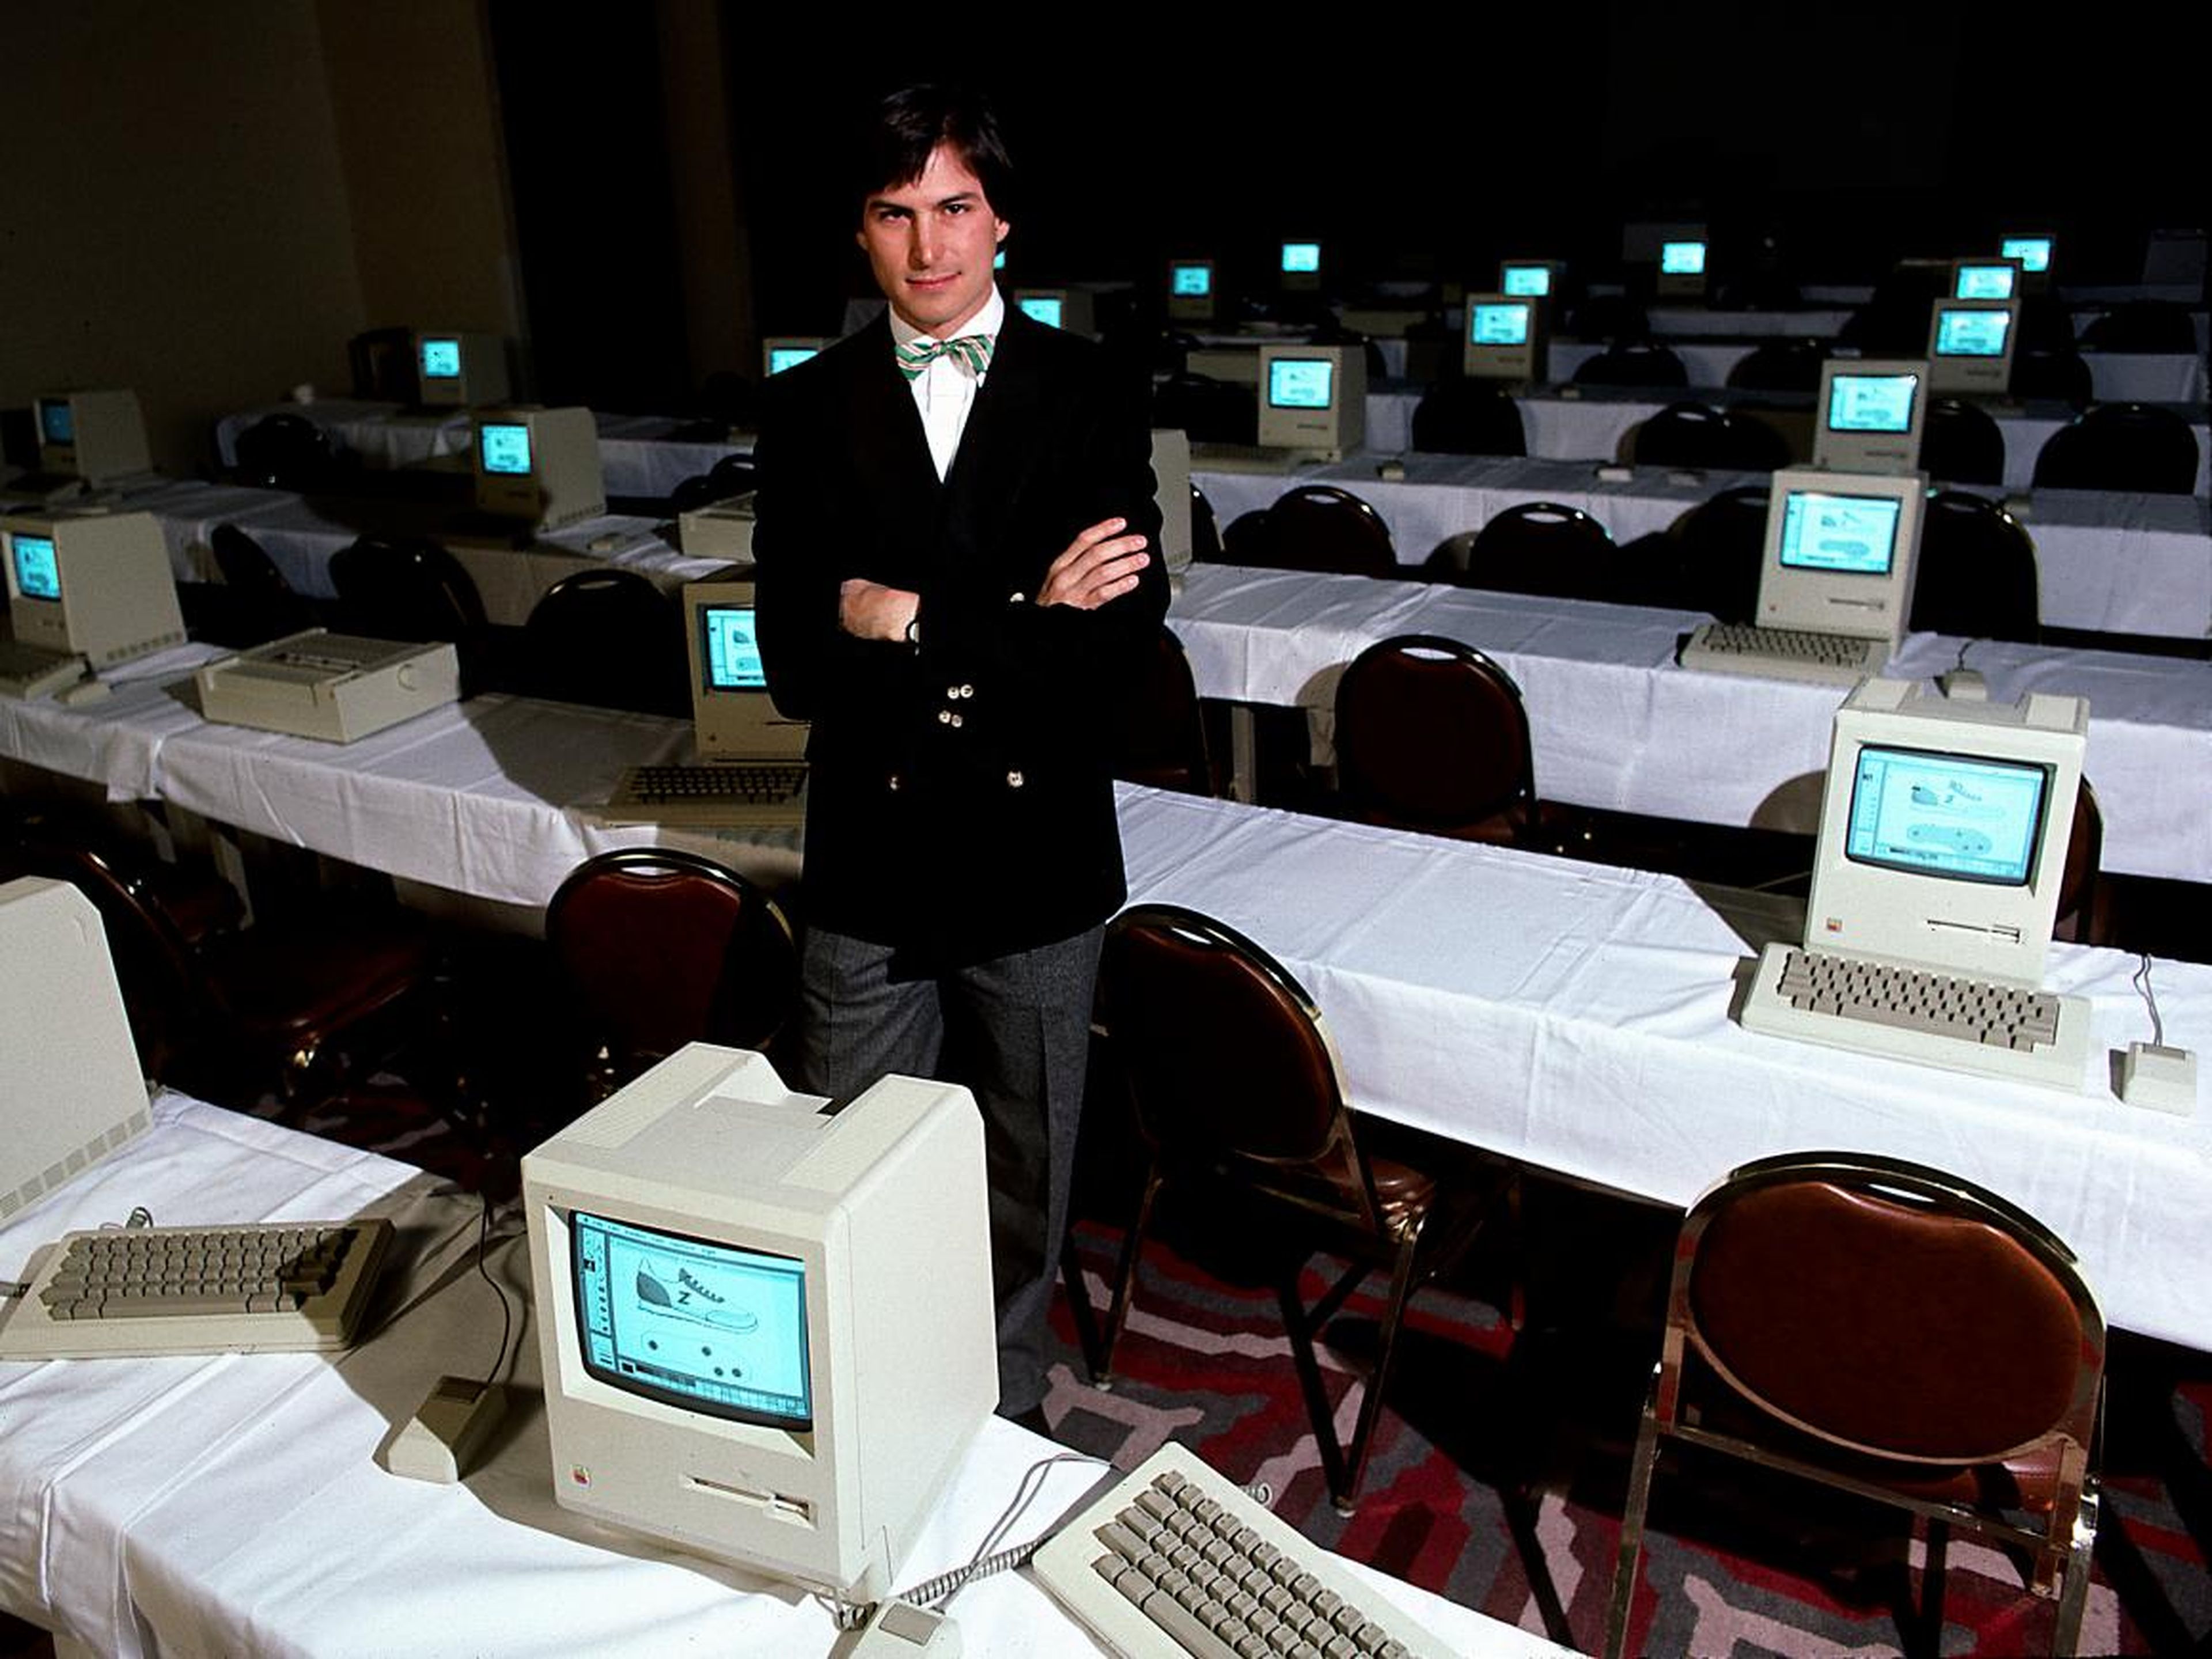 El CEO de Apple Steve Jobs rodeado de ordenadores Macintosh.